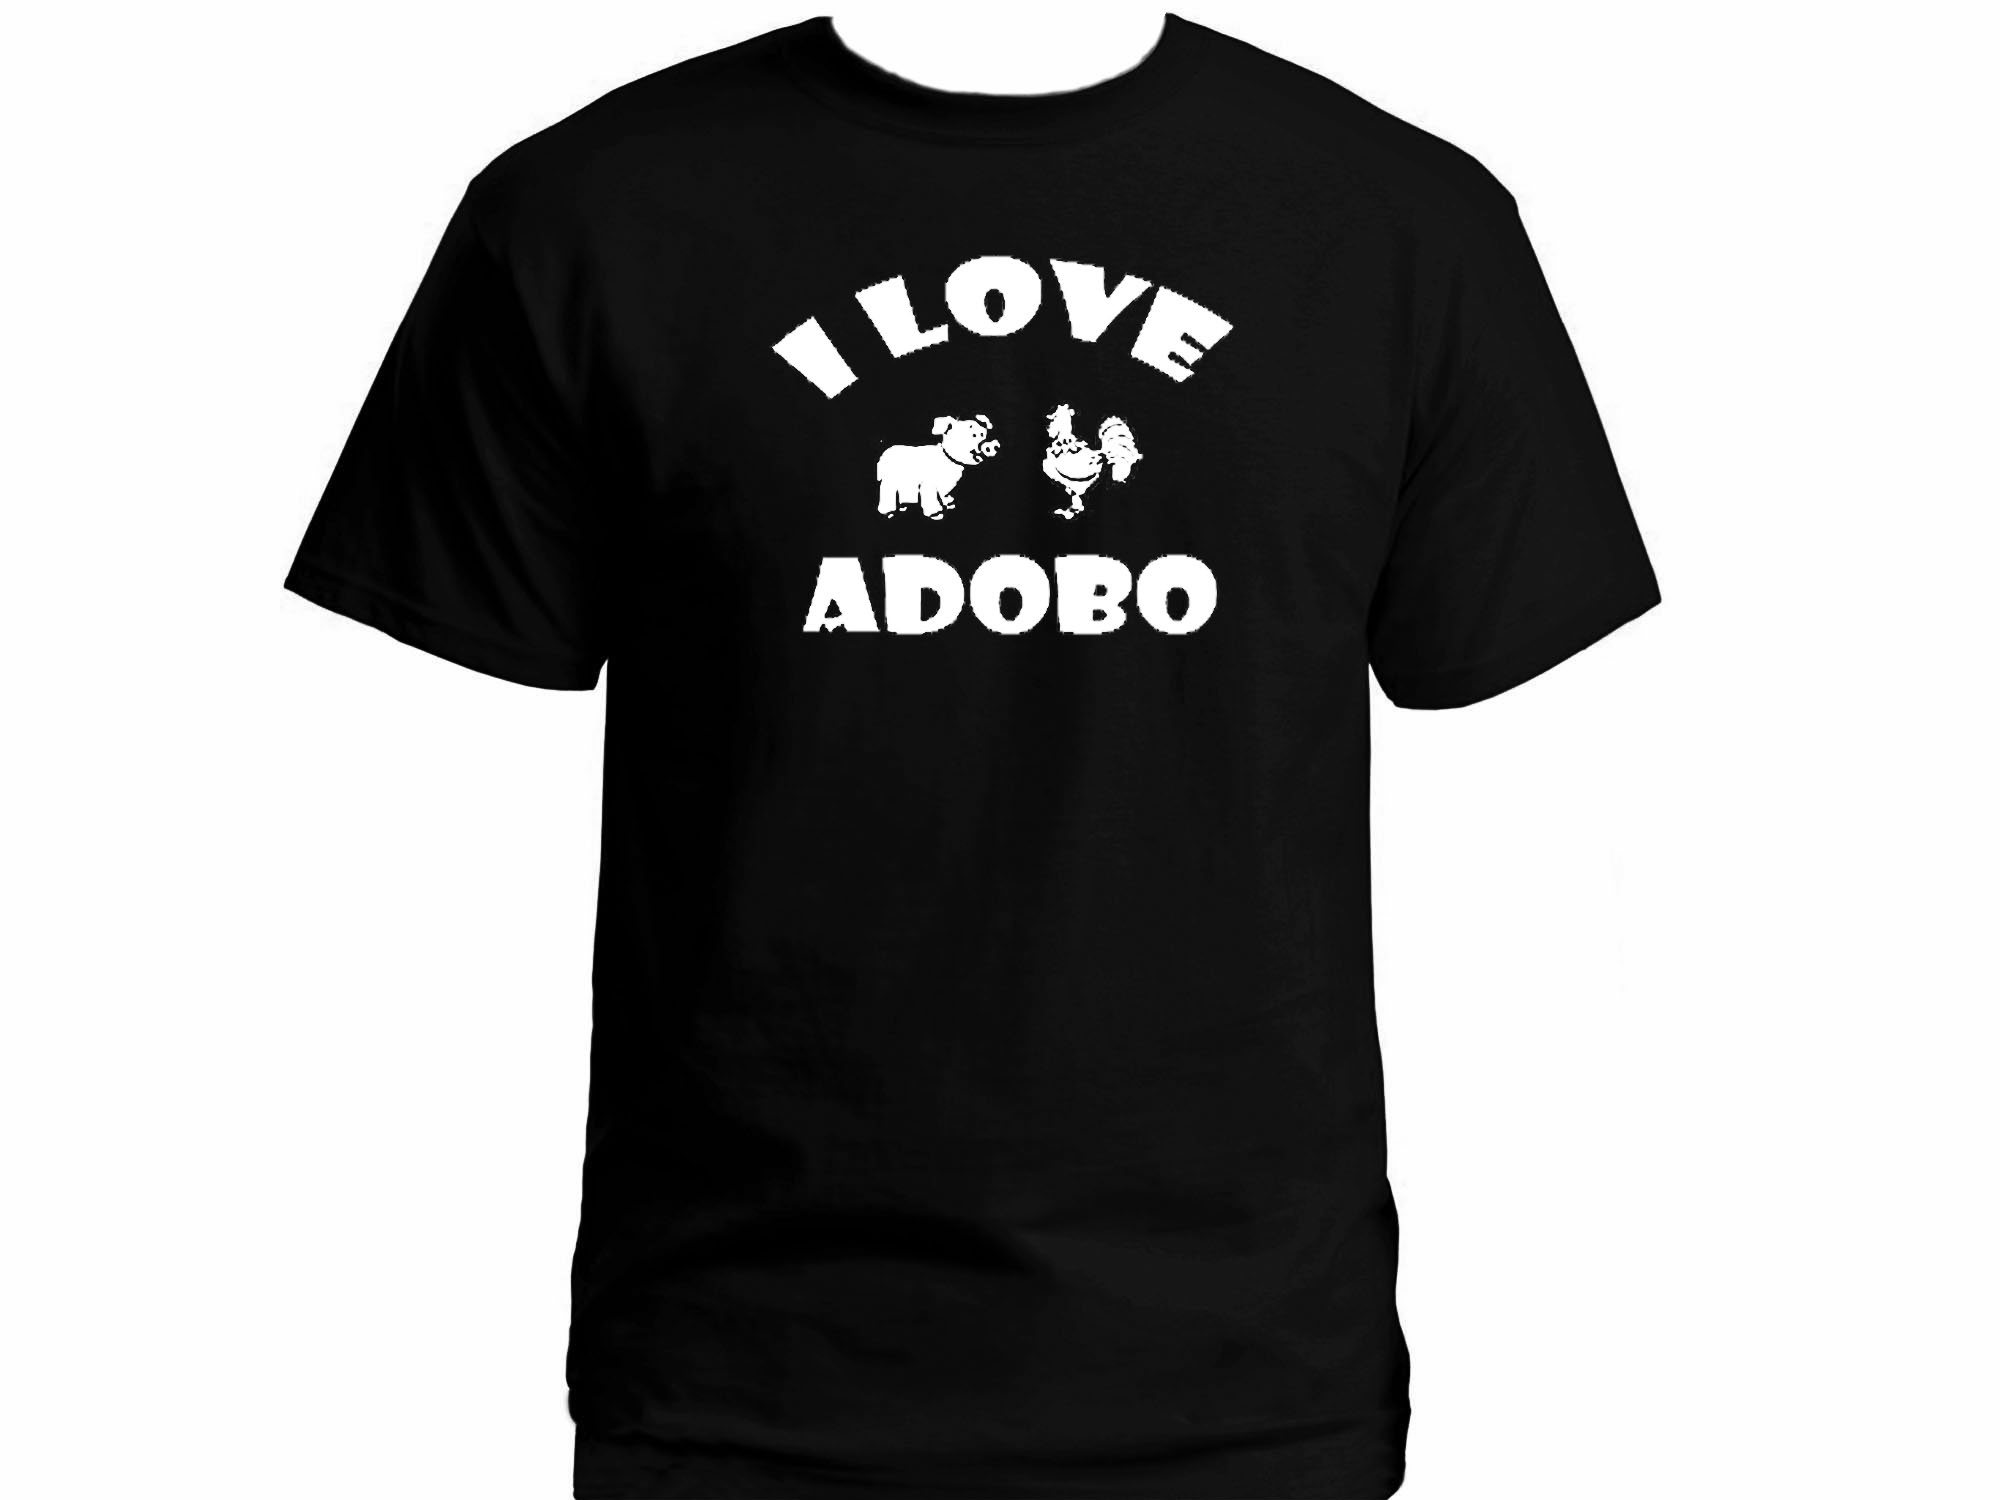 I love adobo-funny food silk printed shirt